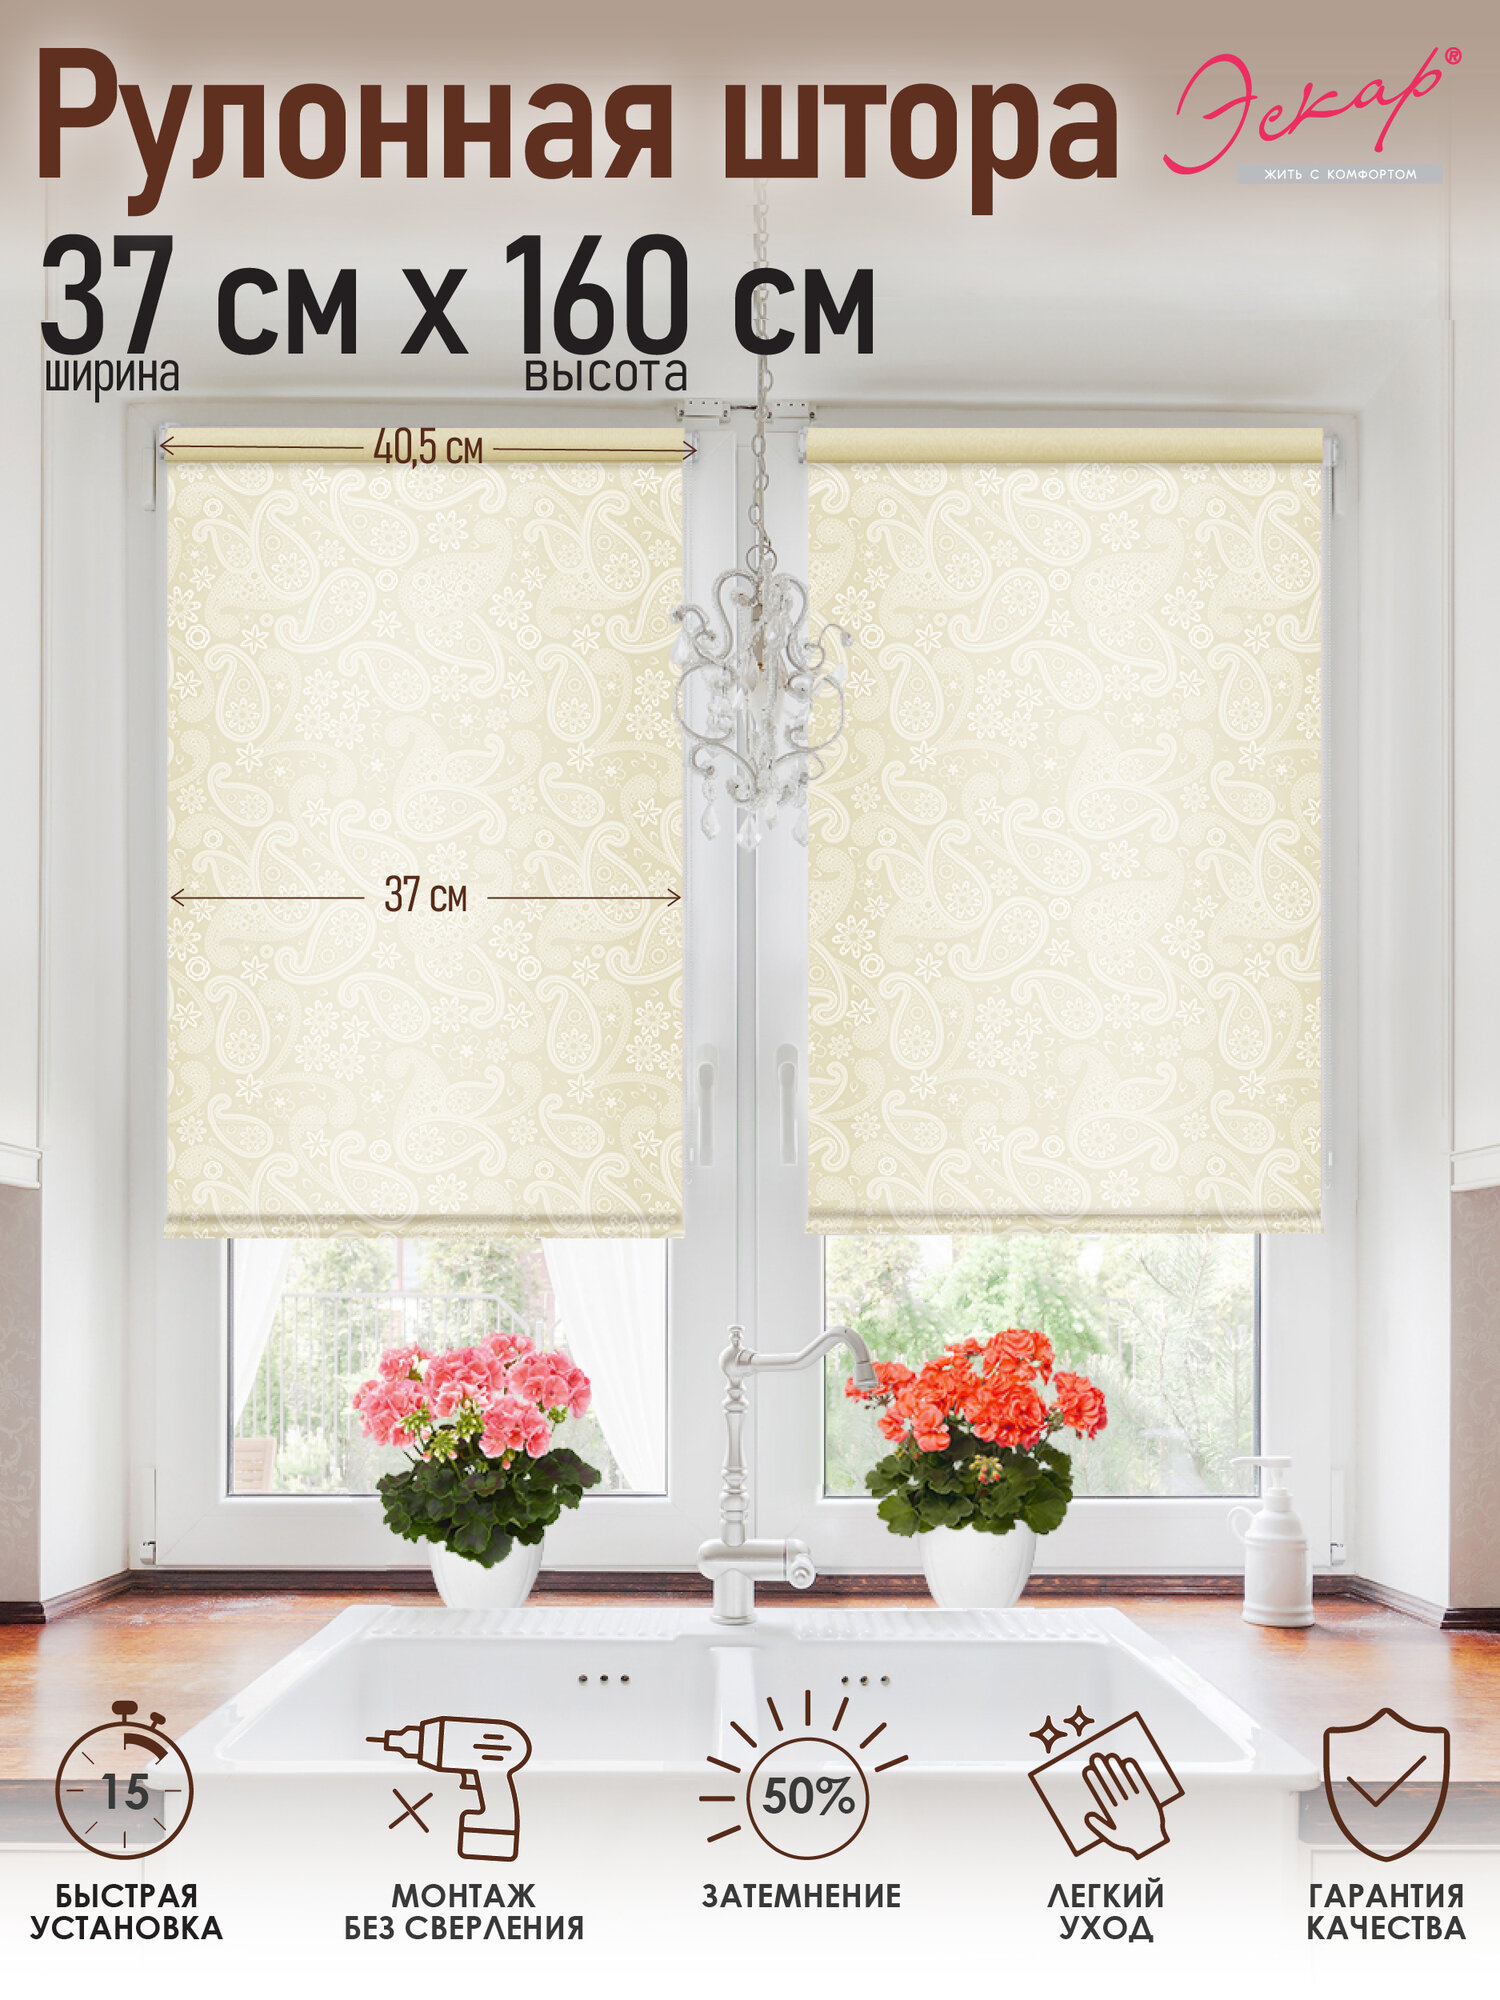 Рулонная штора, Шанталь крем, 37х160 см, арт. 82318037160